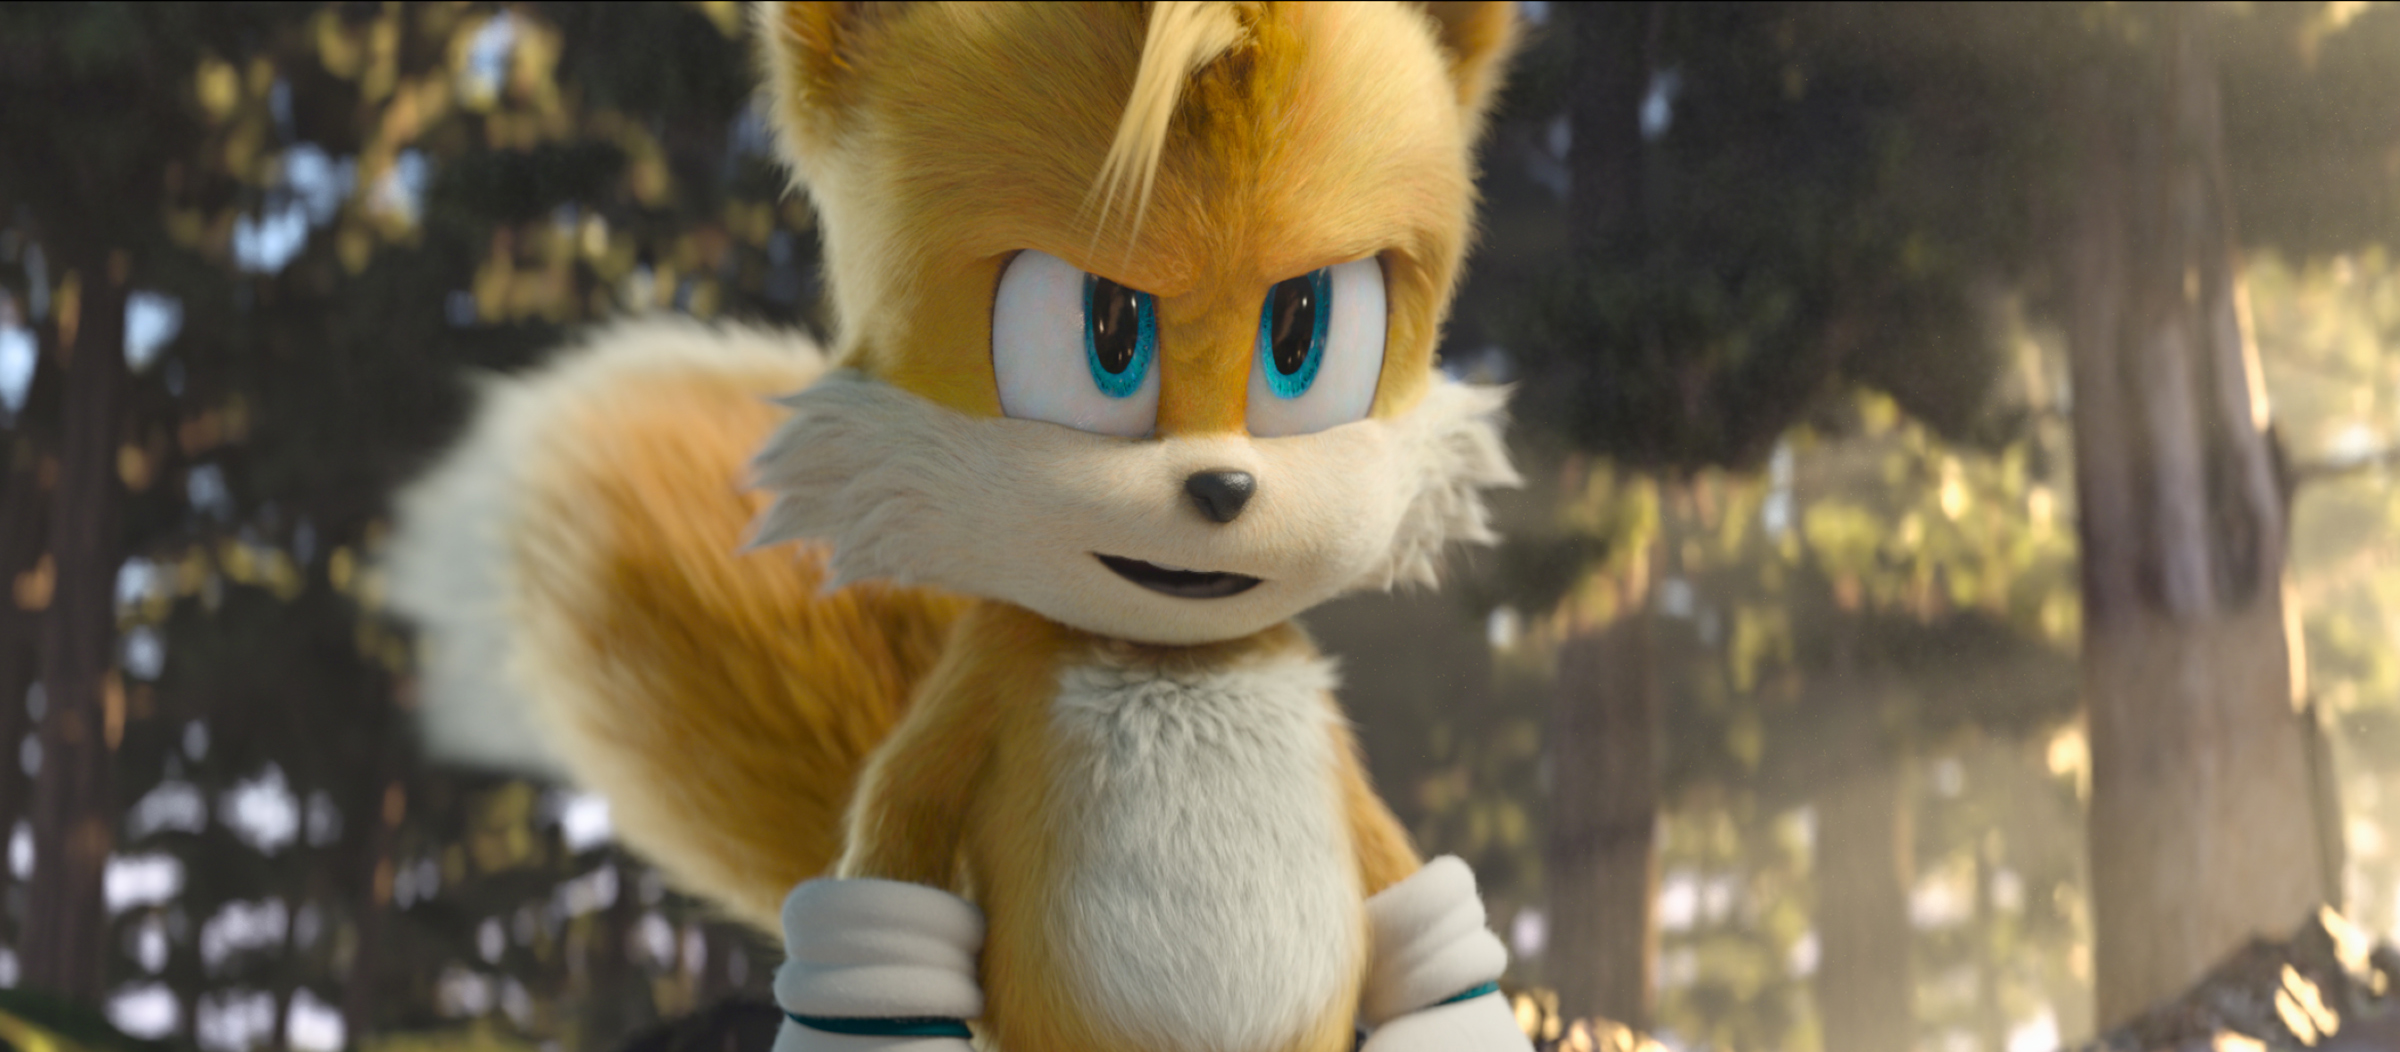 รีวิว Sonic the Hedgehog 2 (2022) ภาคต่อที่มีดีกว่าภาคแรก